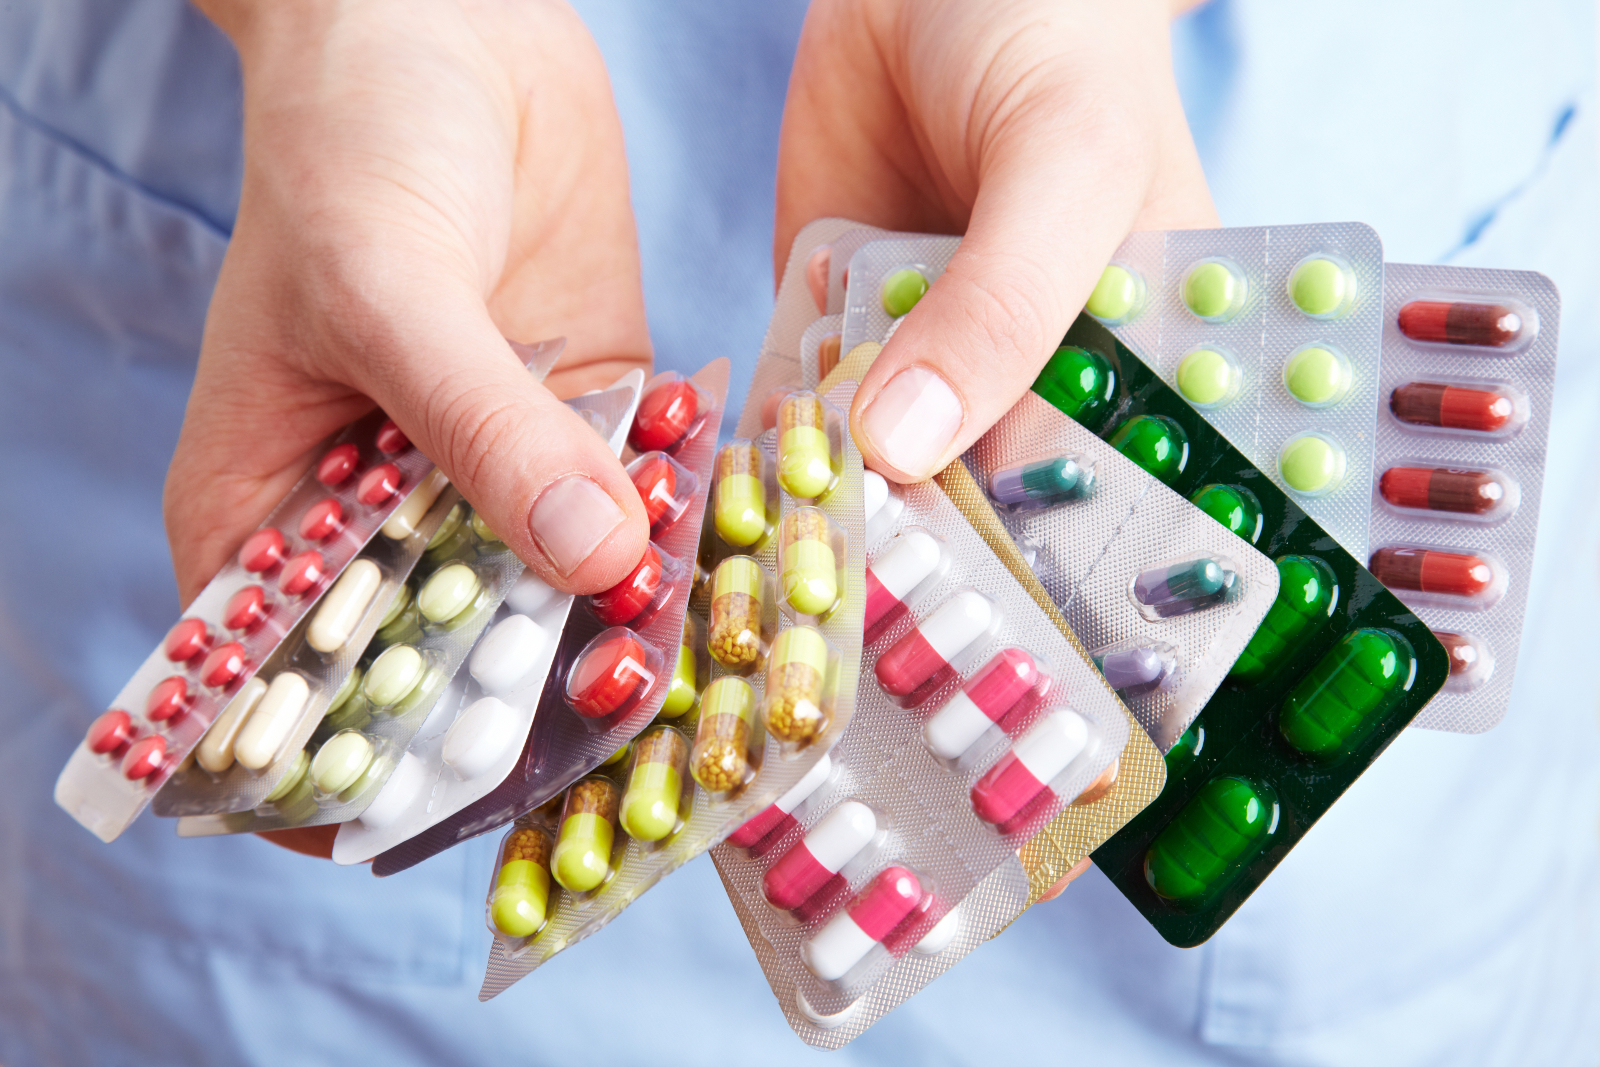 Sindusfarma estima aumento de preços de medicamentos em 2023